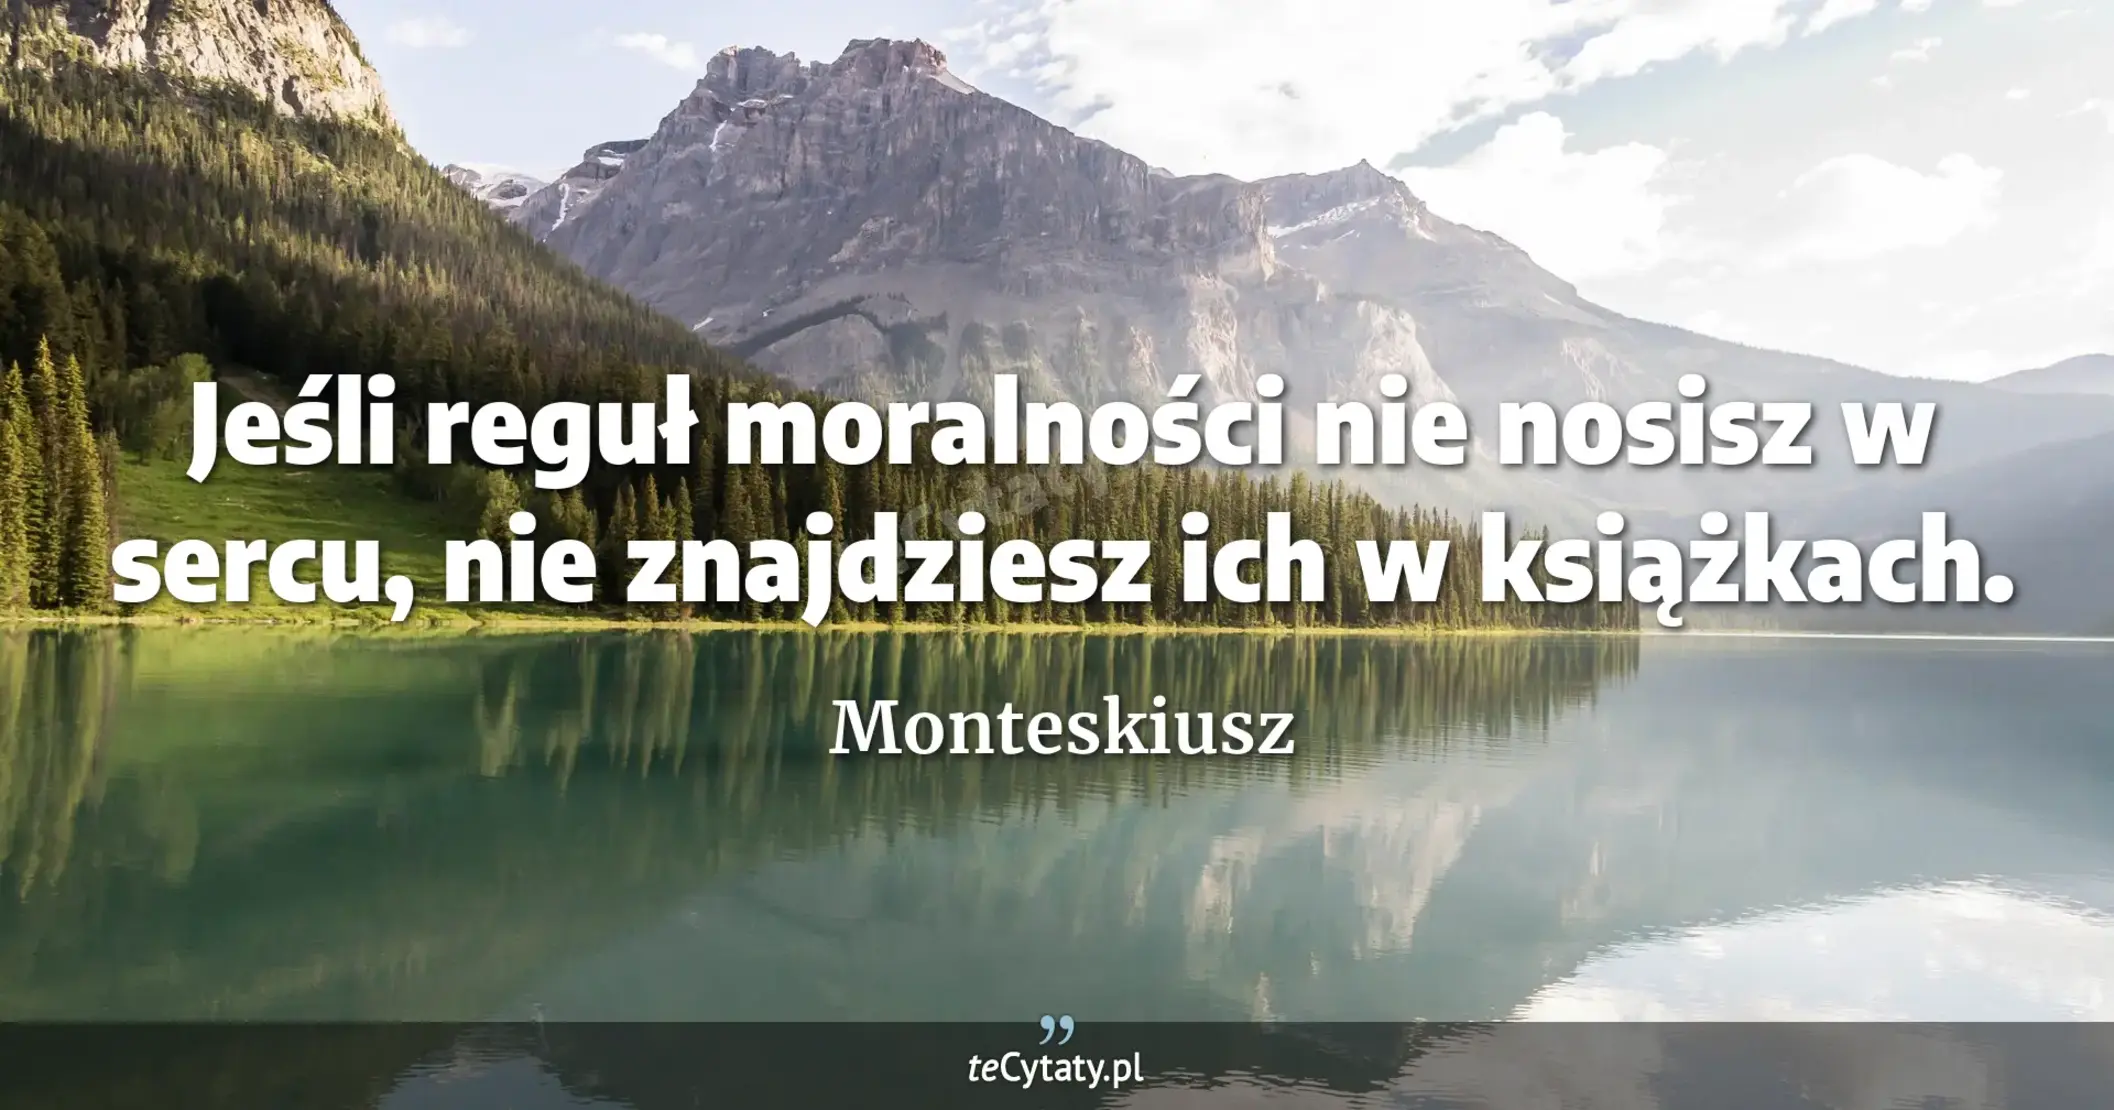 Jeśli reguł moralności nie nosisz w sercu, nie znajdziesz ich w książkach. - Monteskiusz